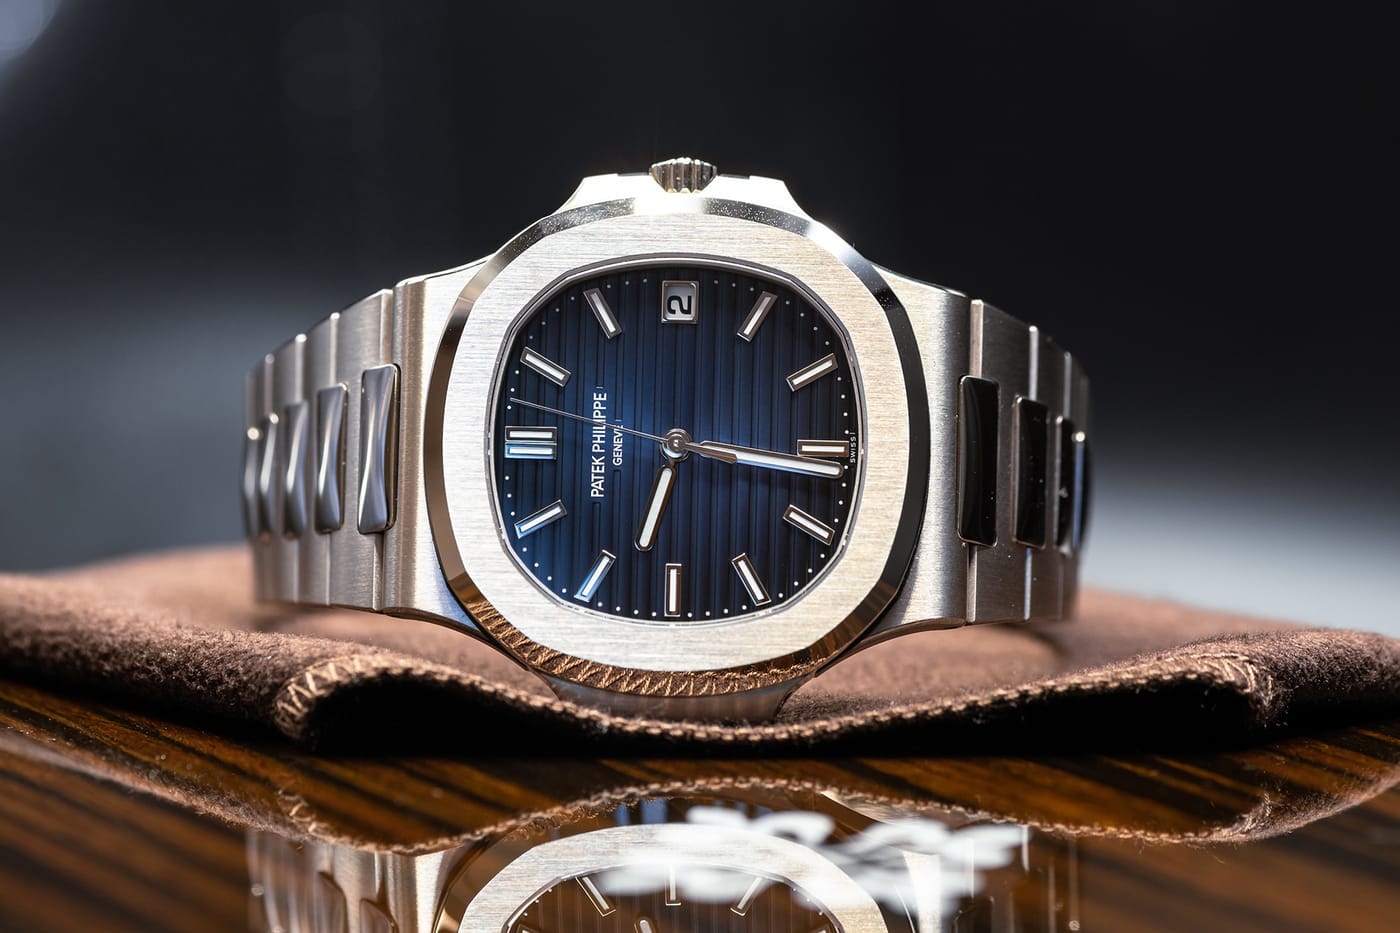 파텍 필립, 25년 만에 새 시계 모델 라인 론칭한다, 노틸러스, 파텍, 시계, 손목시계